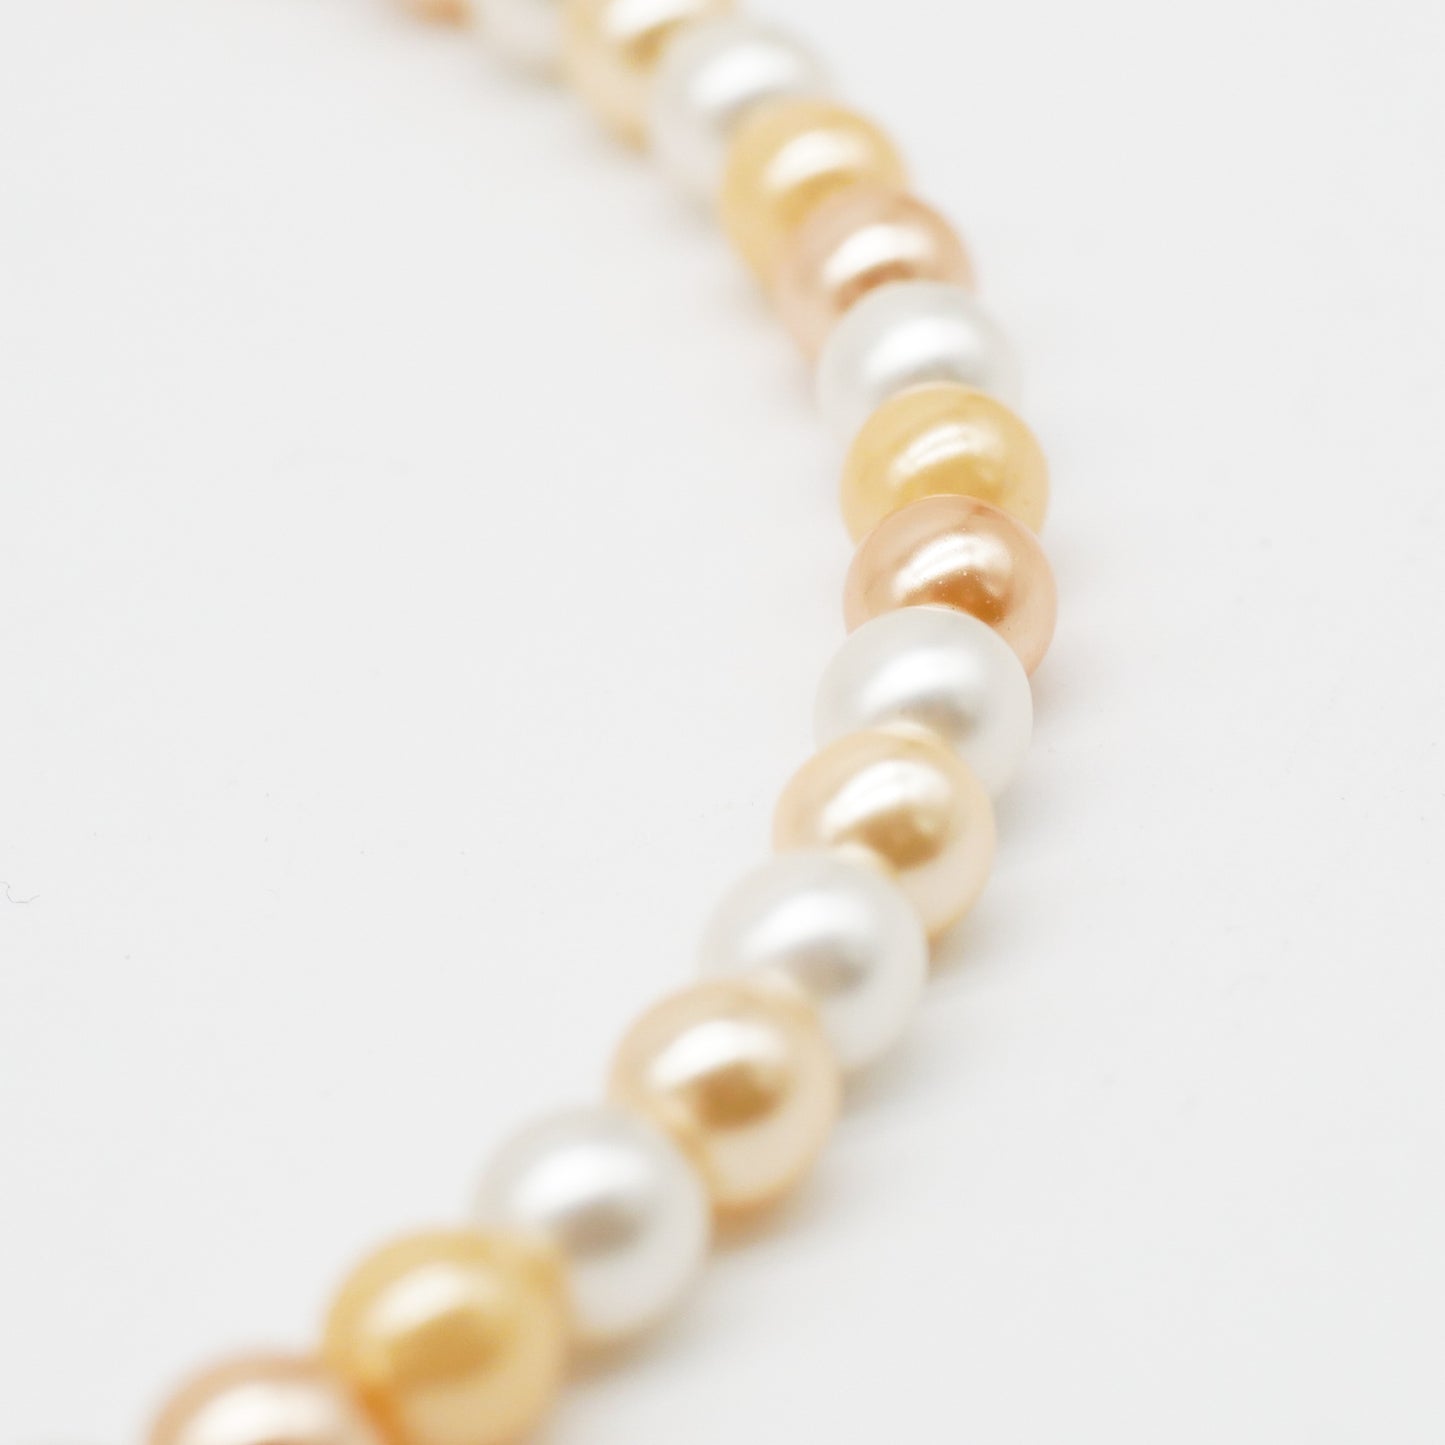 Perlenkette Peachy Pearls